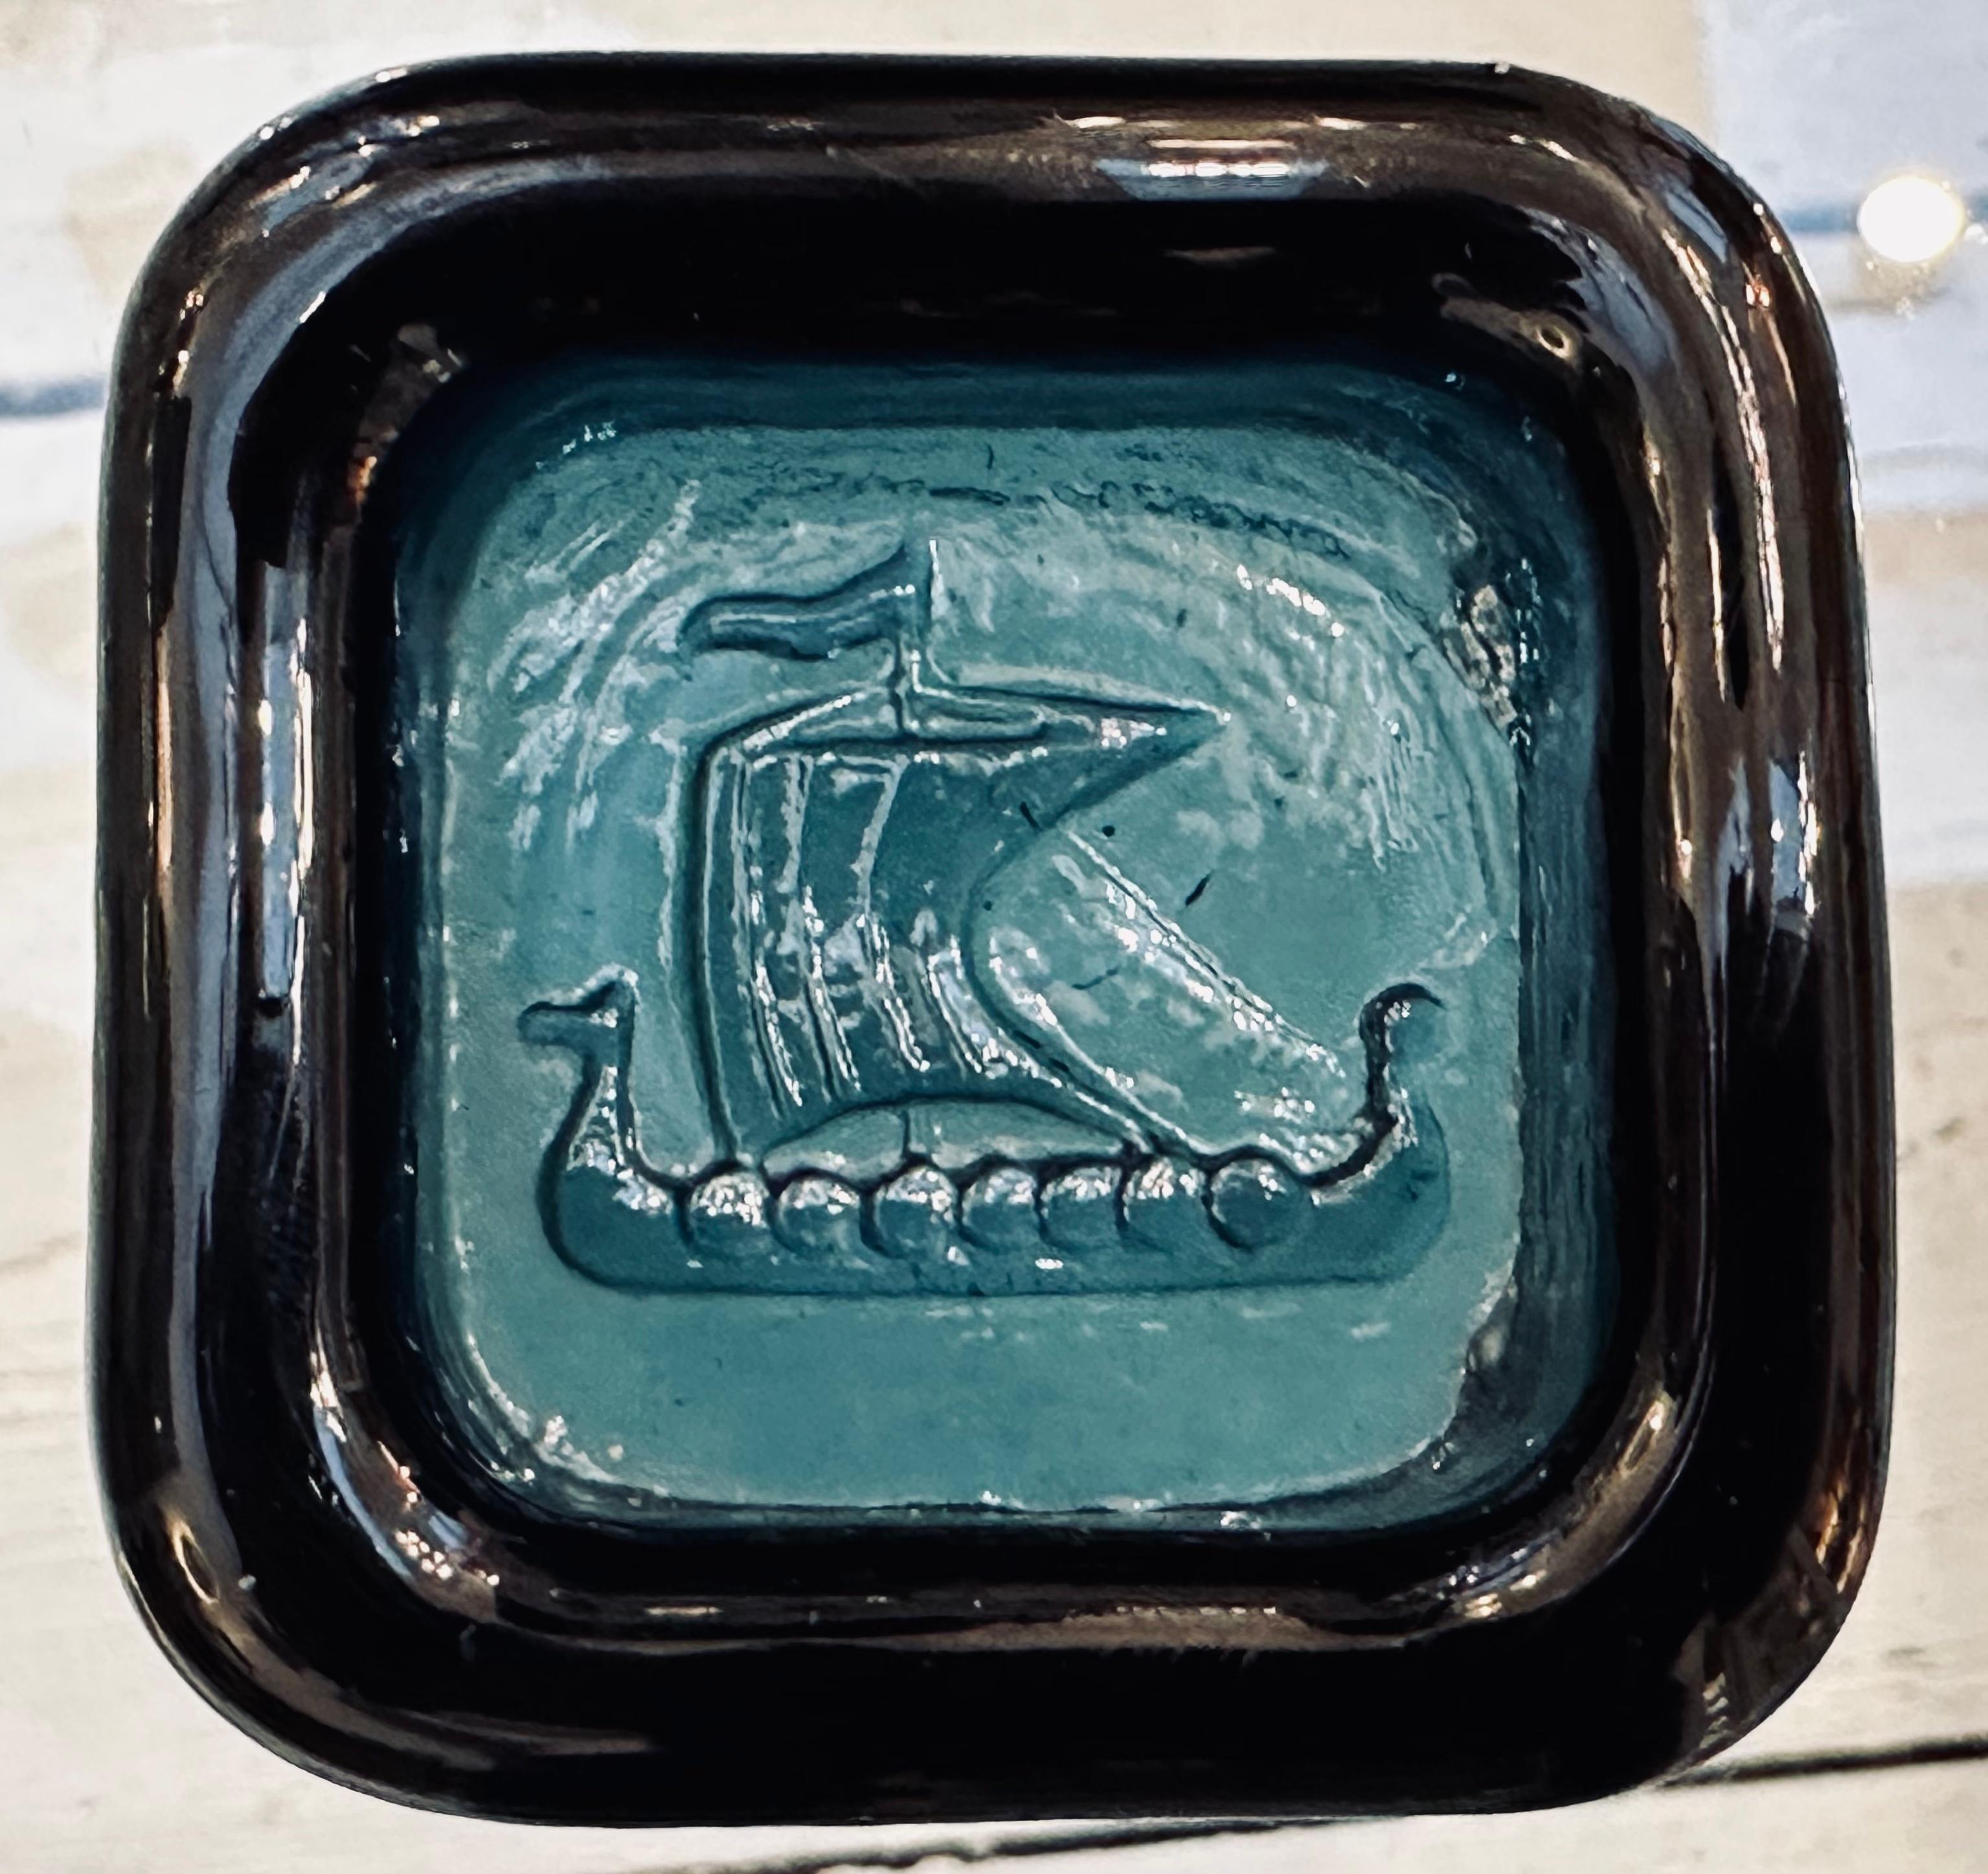 1960er Jahre Kleiner schwedischer Briefbeschwerer, Aschenbecher oder Schmuckschale aus einem dicken Stück quadratischem, dunkelgrünem Glas. Das Wikingerschiff-Motiv wird in den Boden des Glases gepresst, um die eingedrückte Schalenform zu bilden.